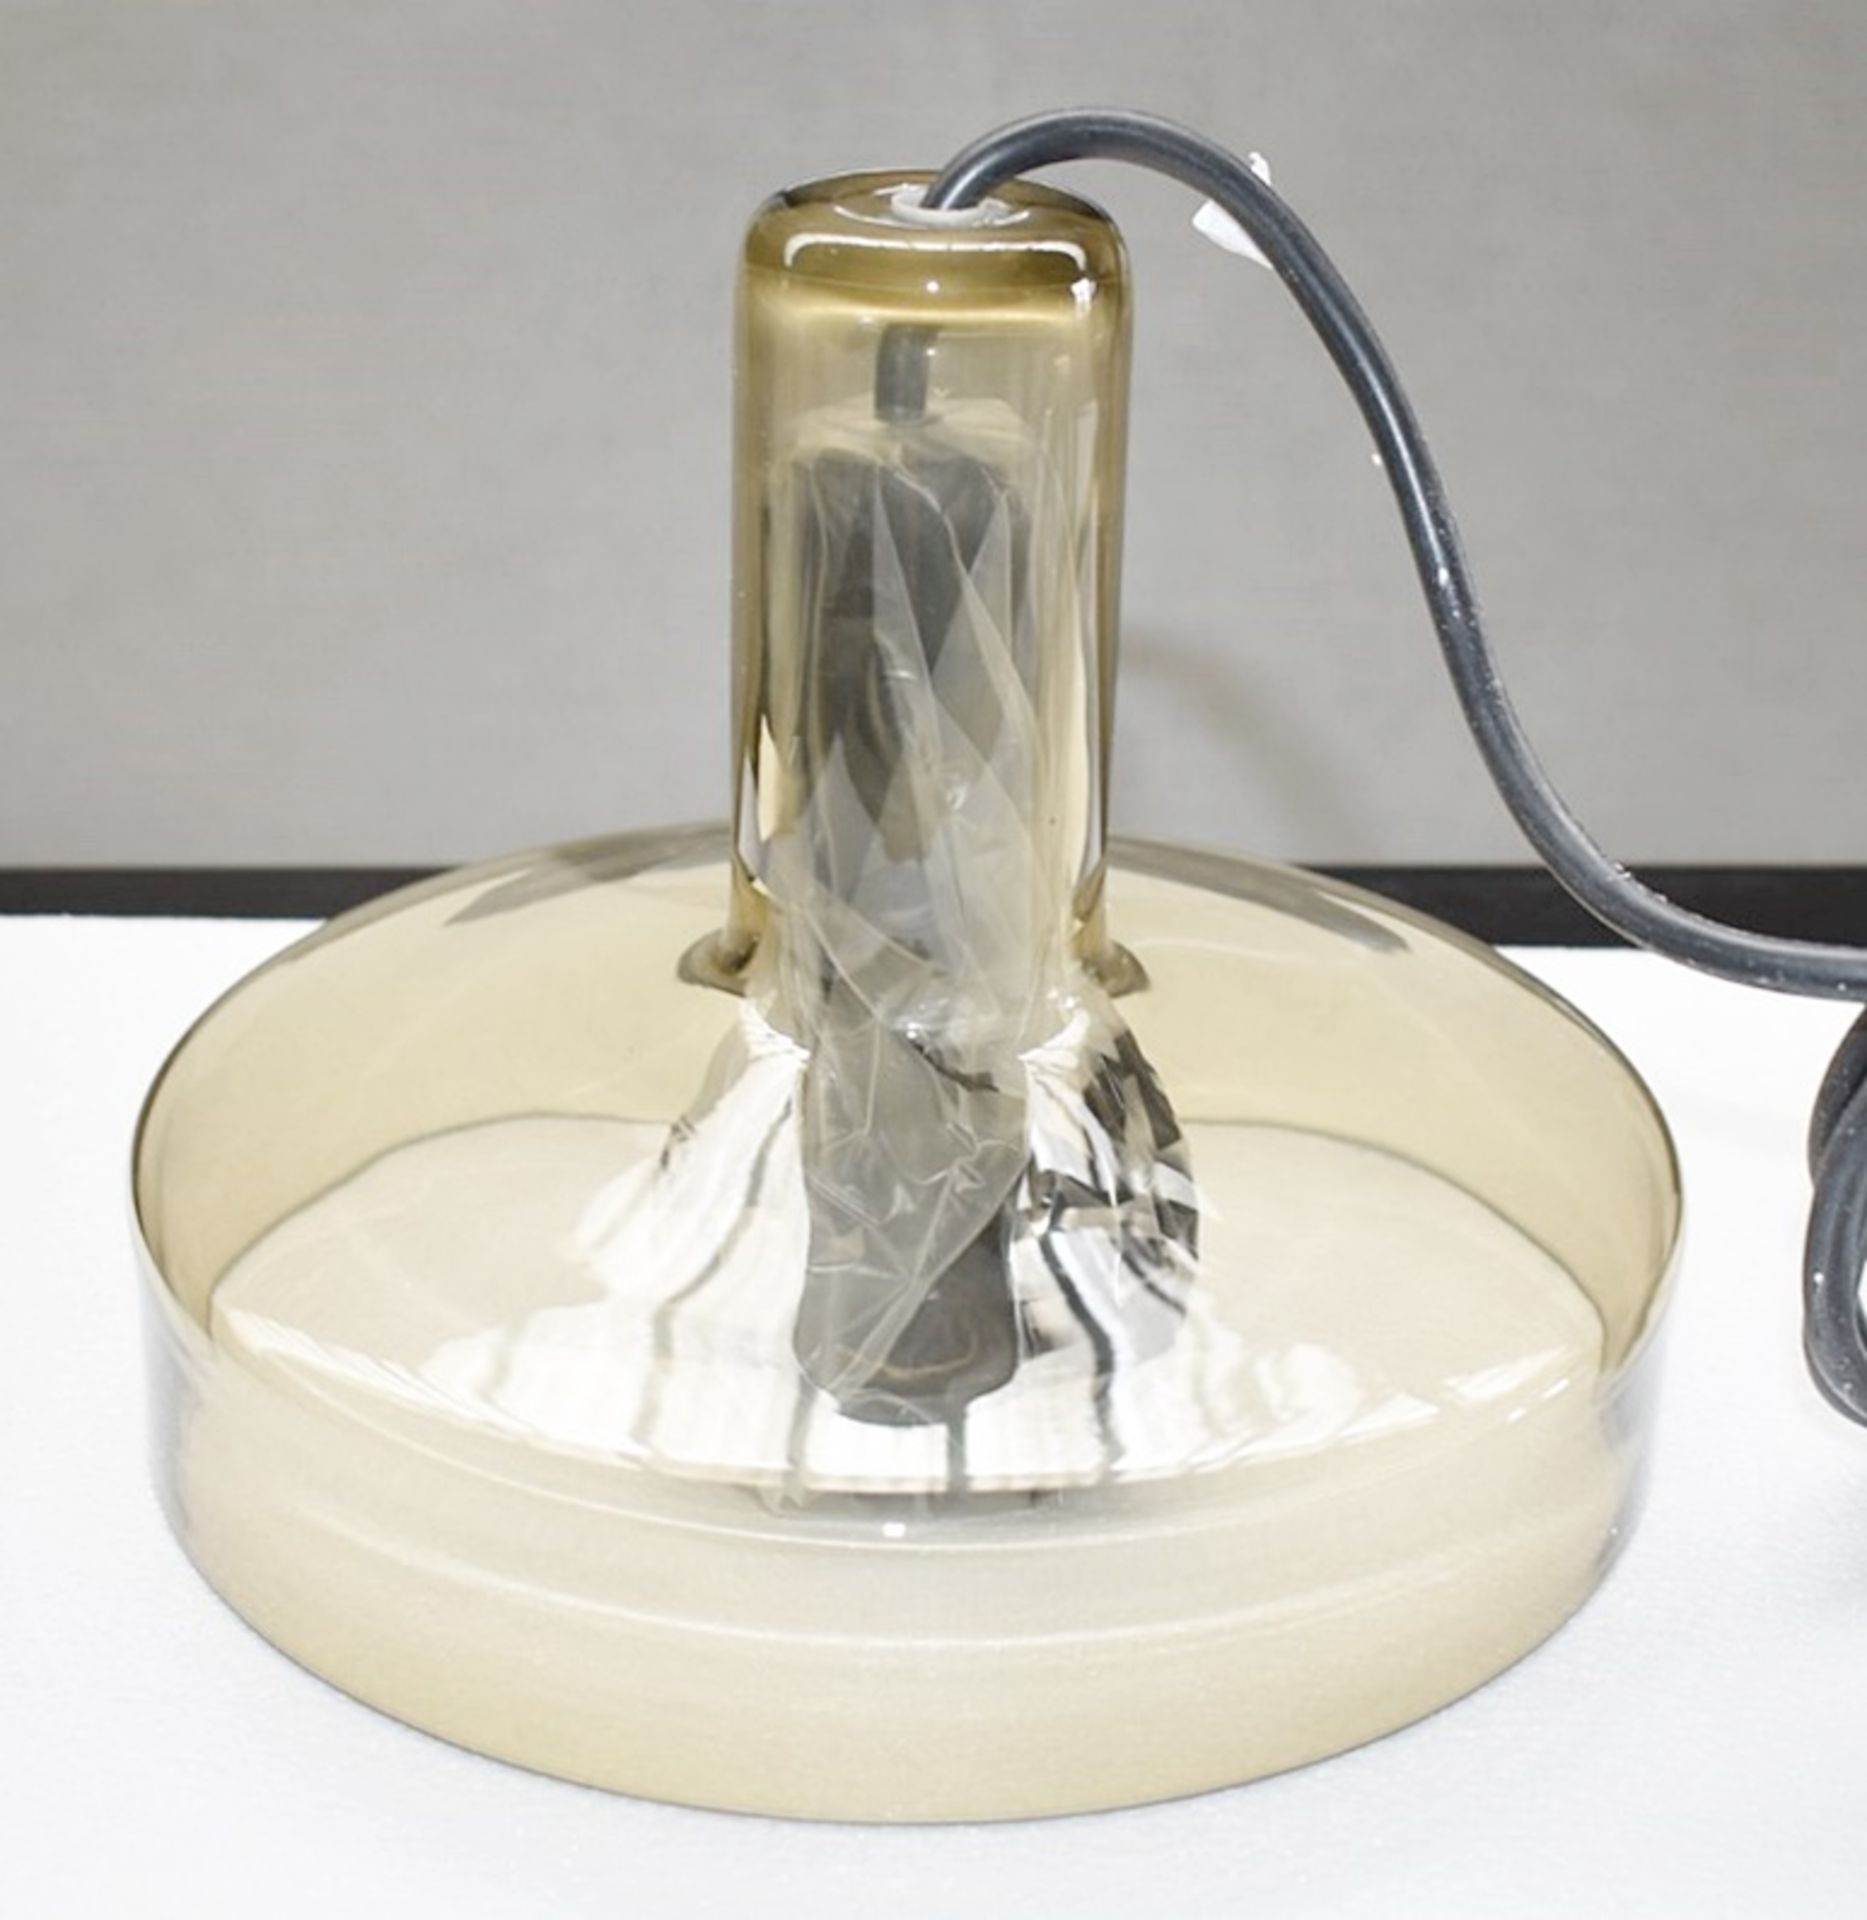 1 x ARTEMIDE Stablight 'C' Designer Suspension Lamp in a Brown Blown Glass - Original RRP £320.00 - Image 3 of 7